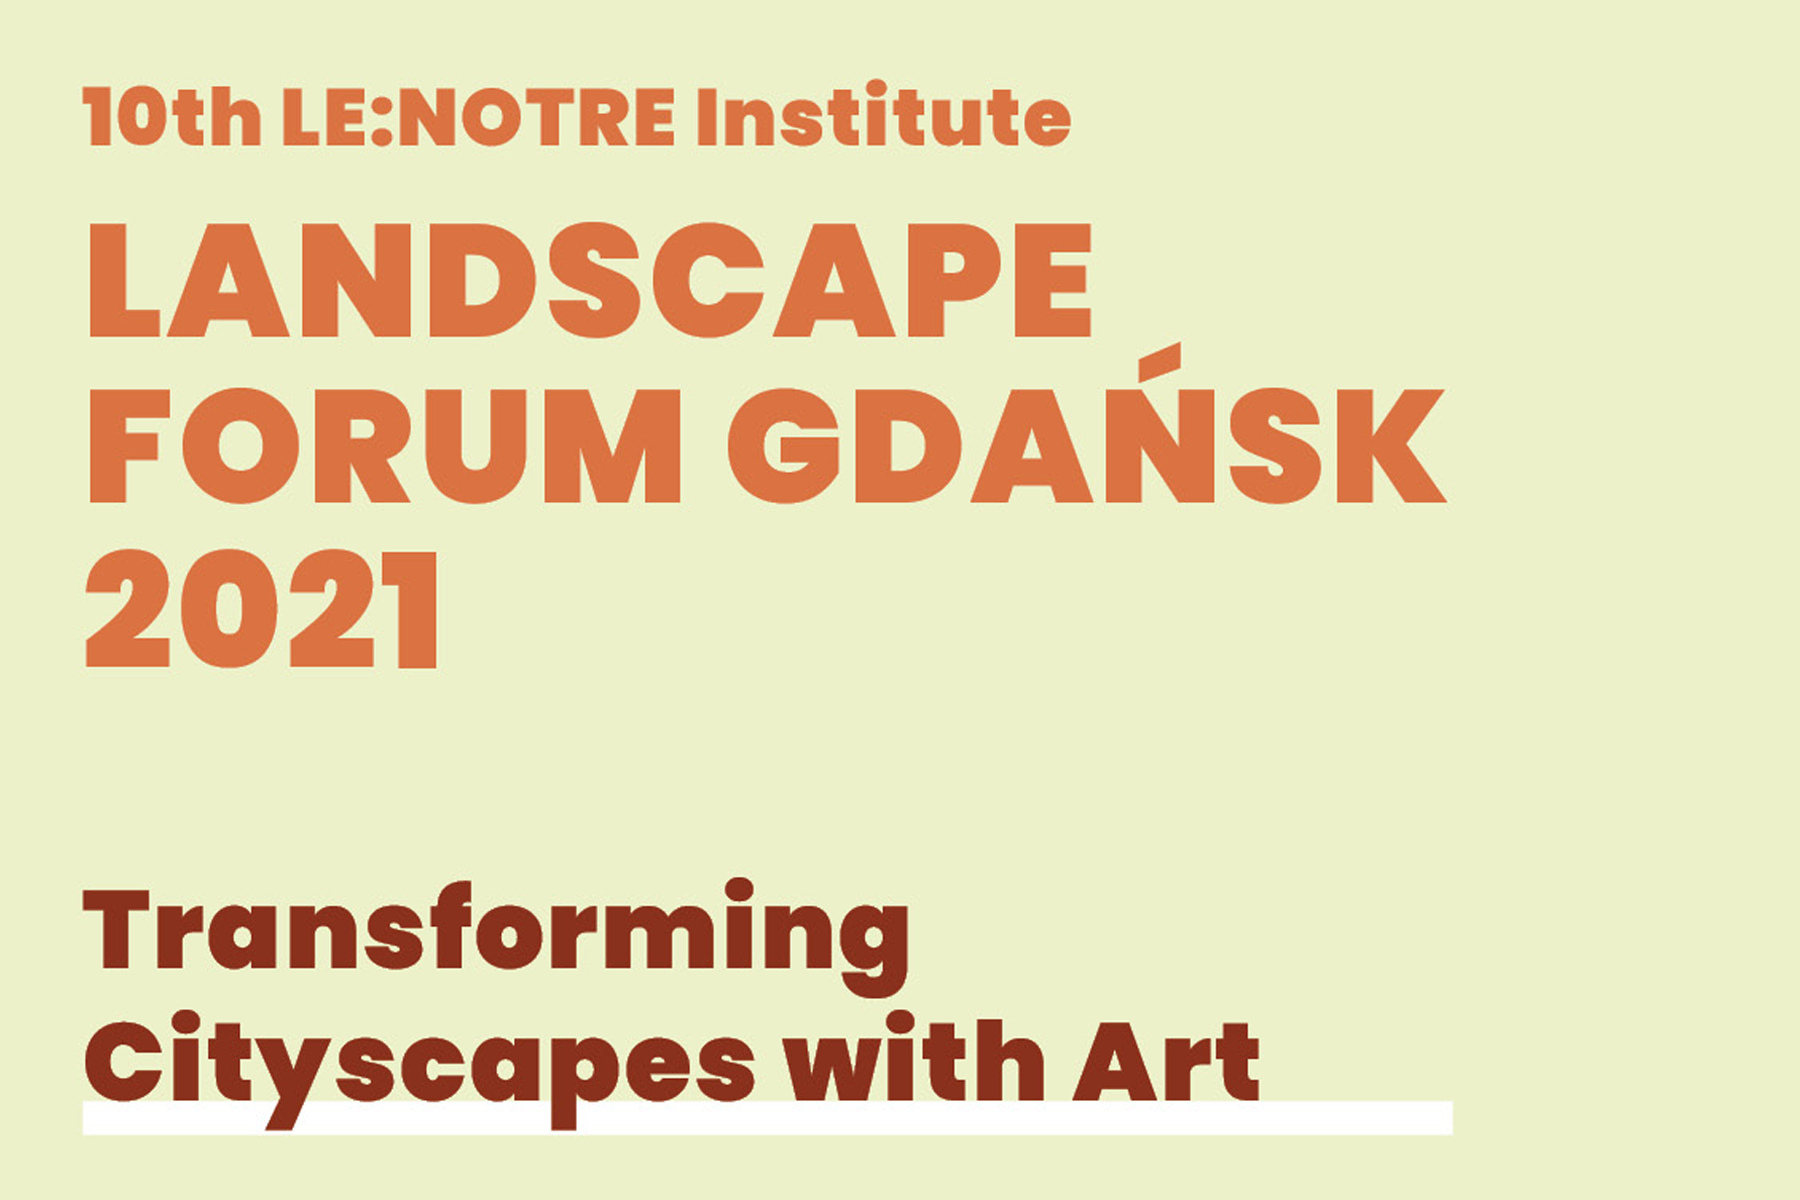 Poster promoting the Landscape Forum Gdańsk event